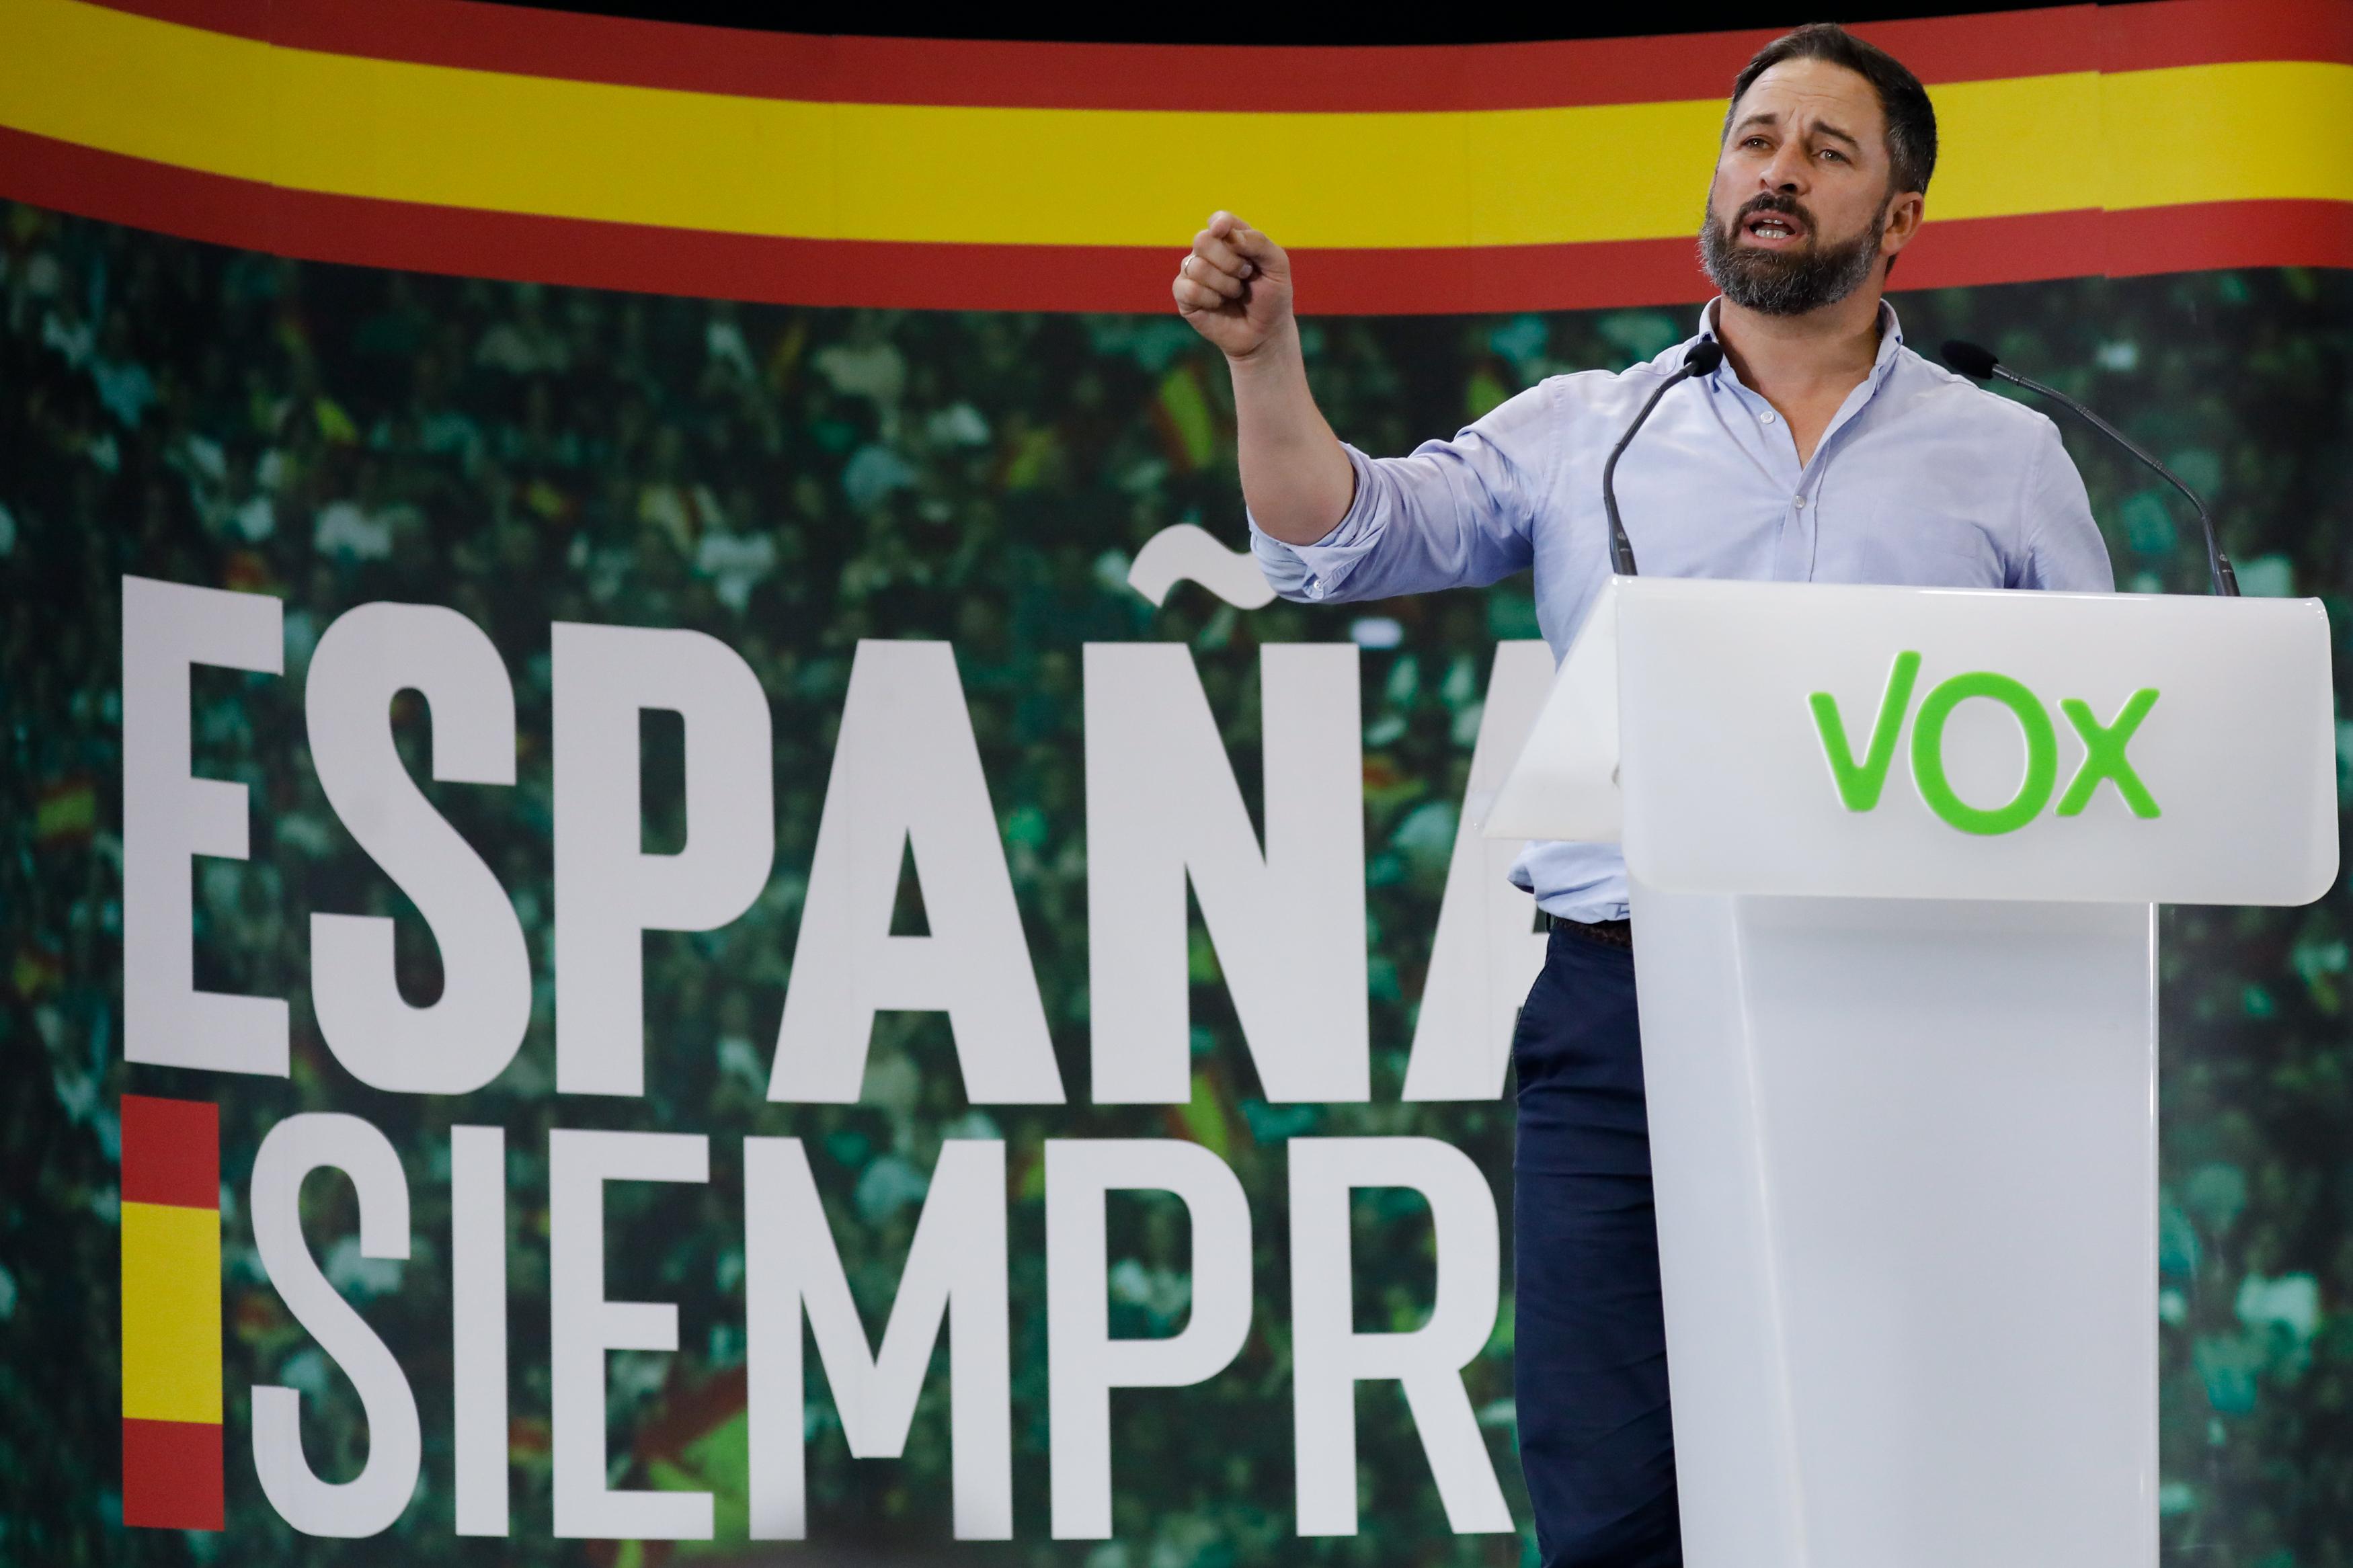 El presidente de Vox Santiago Abascal habló de las ayudas a inmigrantes durante el mitin del partido en Murcia. EP